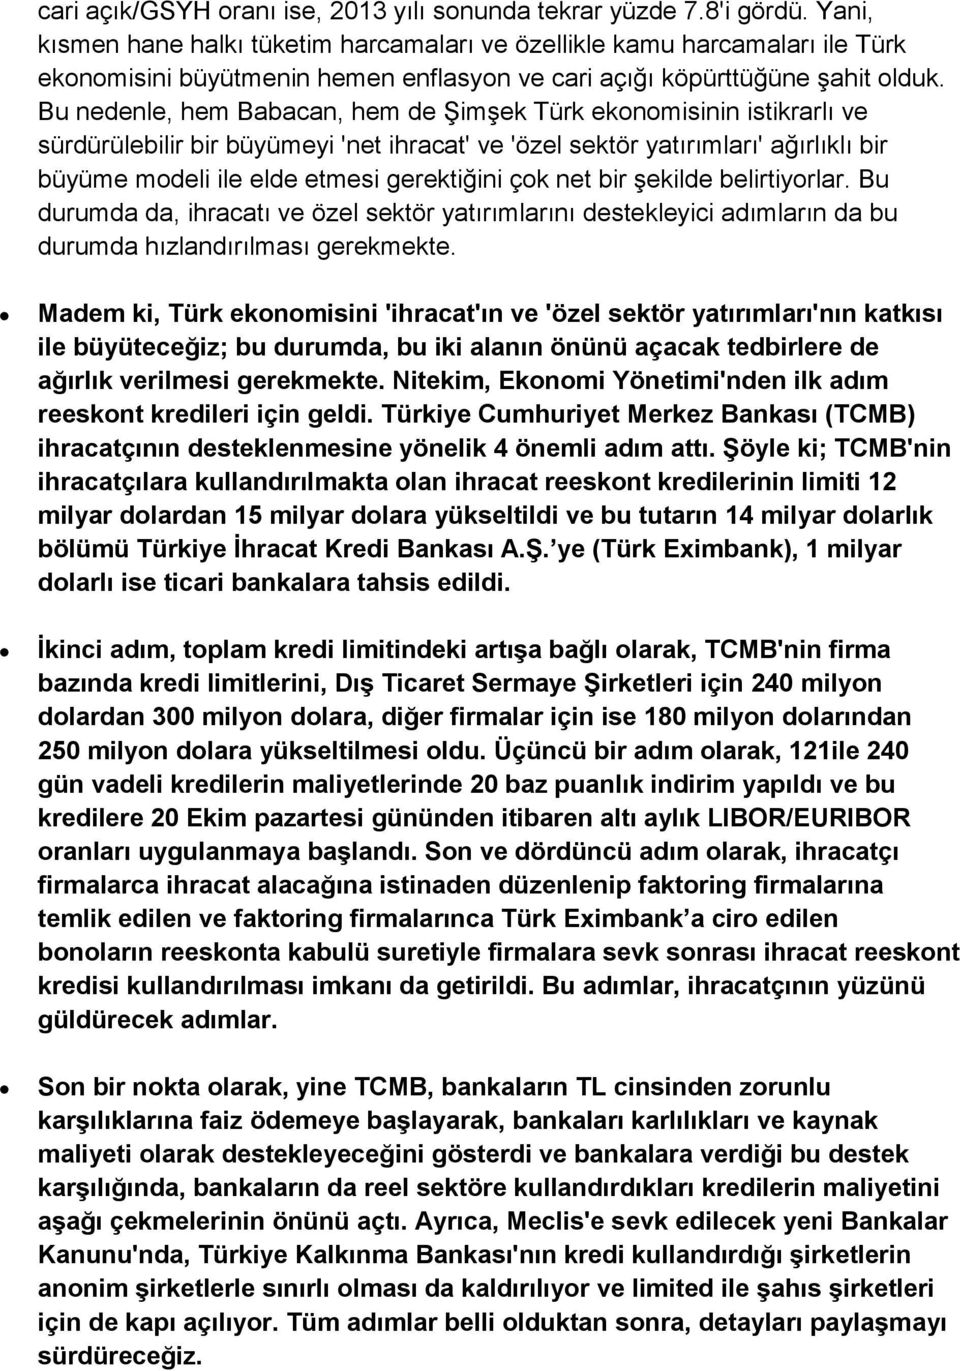 Bu nedenle, hem Babacan, hem de Şimşek Türk ekonomisinin istikrarlı ve sürdürülebilir bir büyümeyi 'net ihracat' ve 'özel sektör yatırımları' ağırlıklı bir büyüme modeli ile elde etmesi gerektiğini